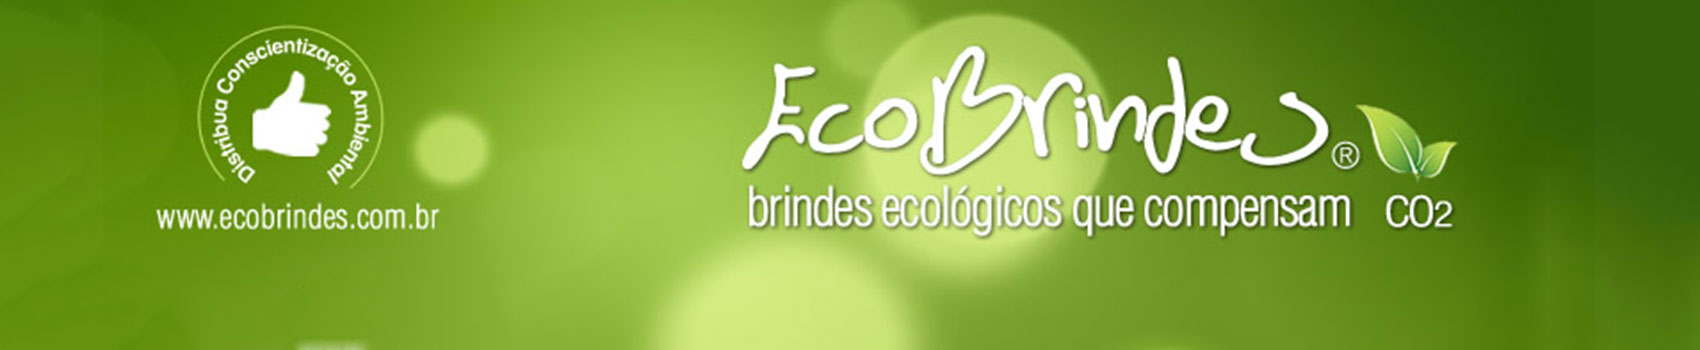 Ecobrindes